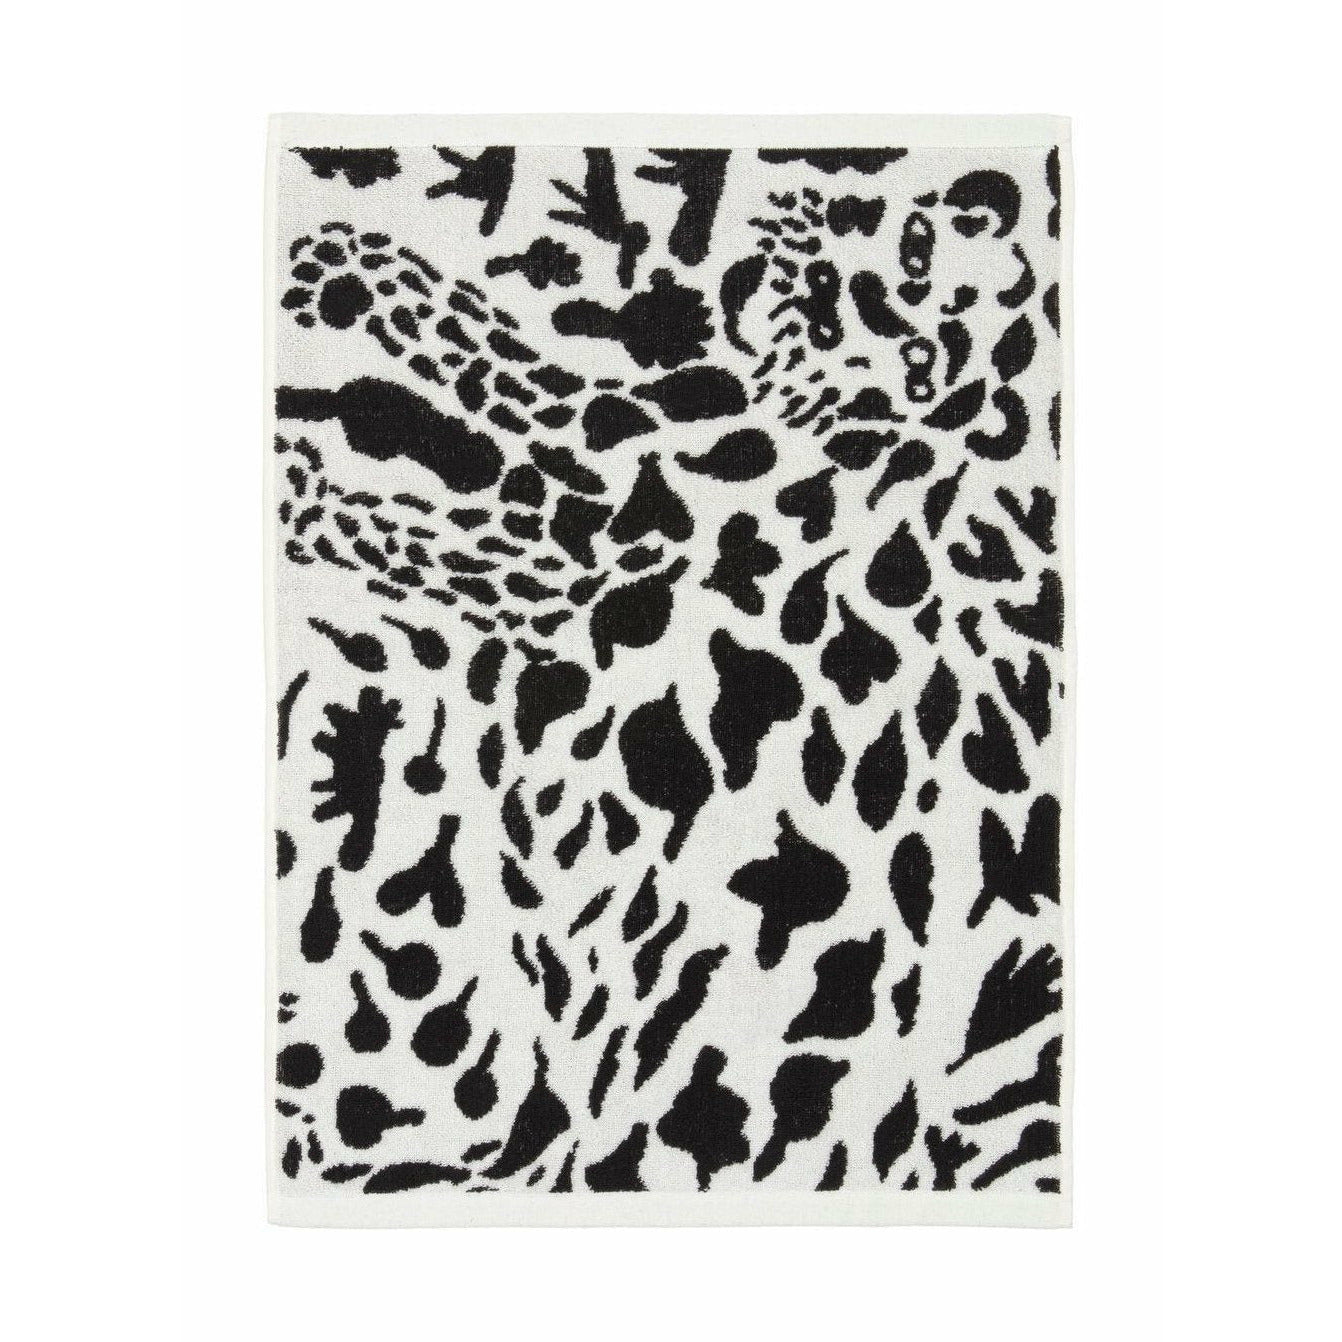 Iittala Oiva Toikka Bath Towel Cheetah, 70x140cm